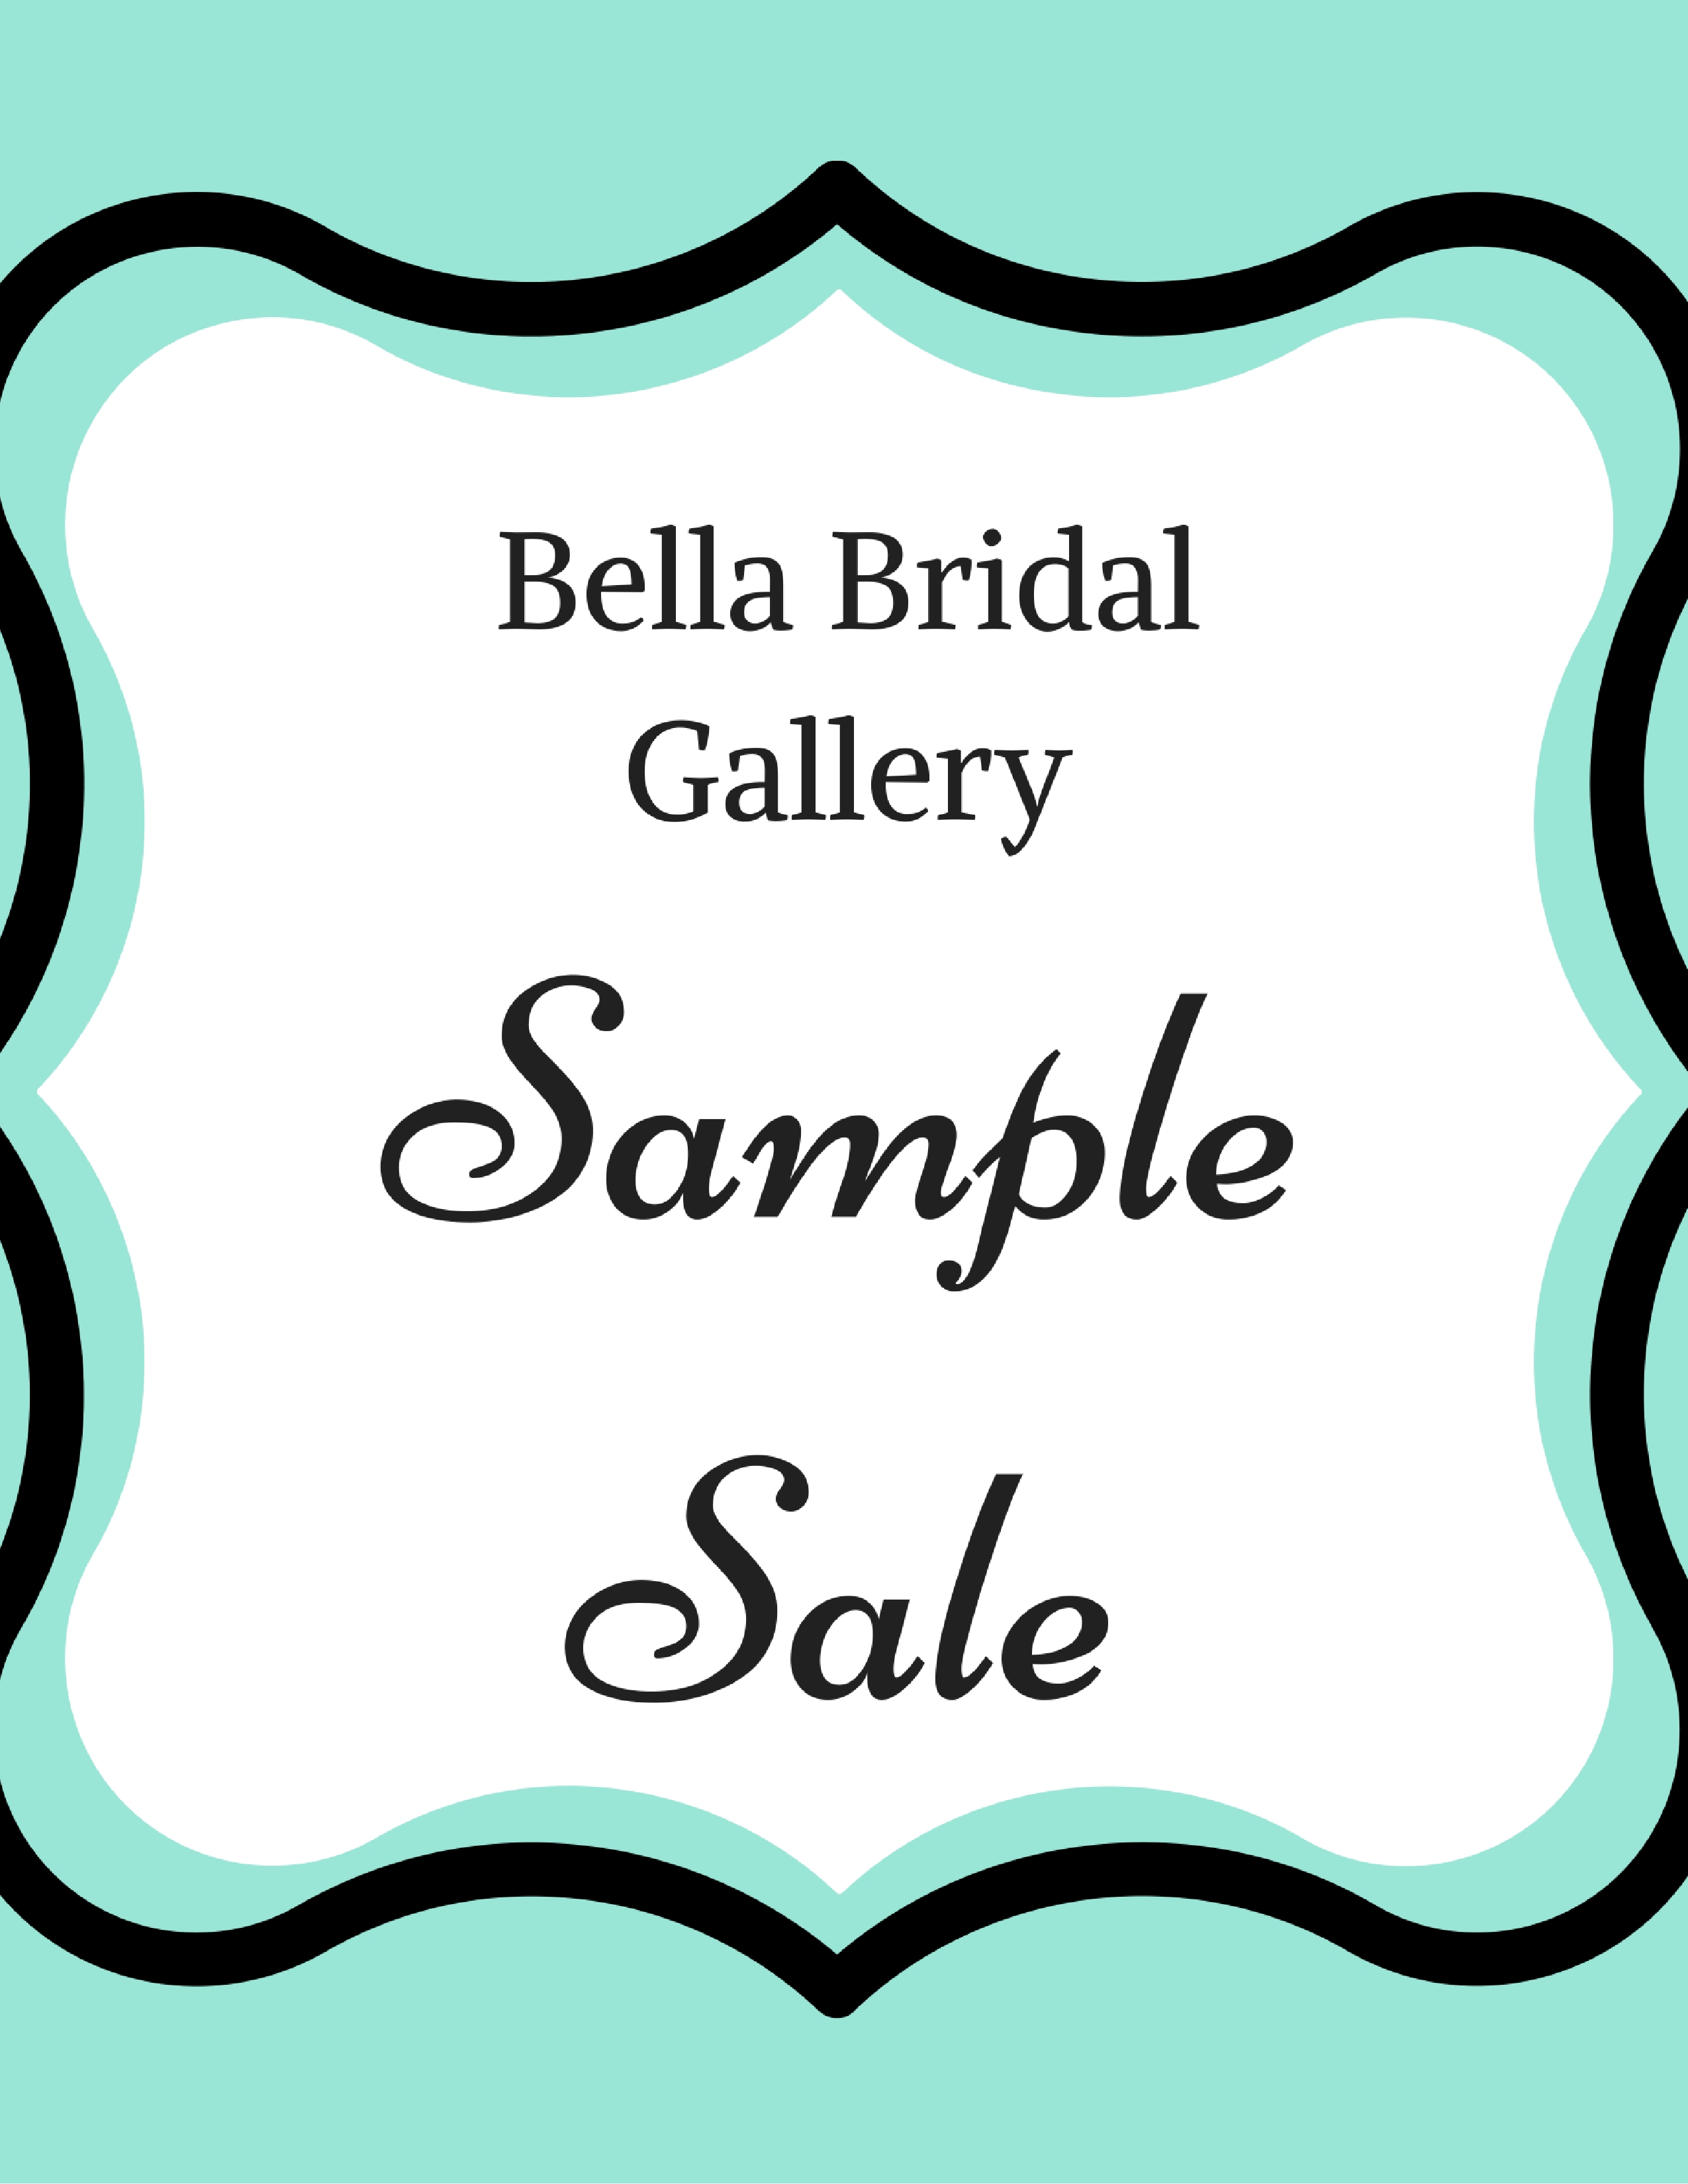 Bella Bridal Gallery